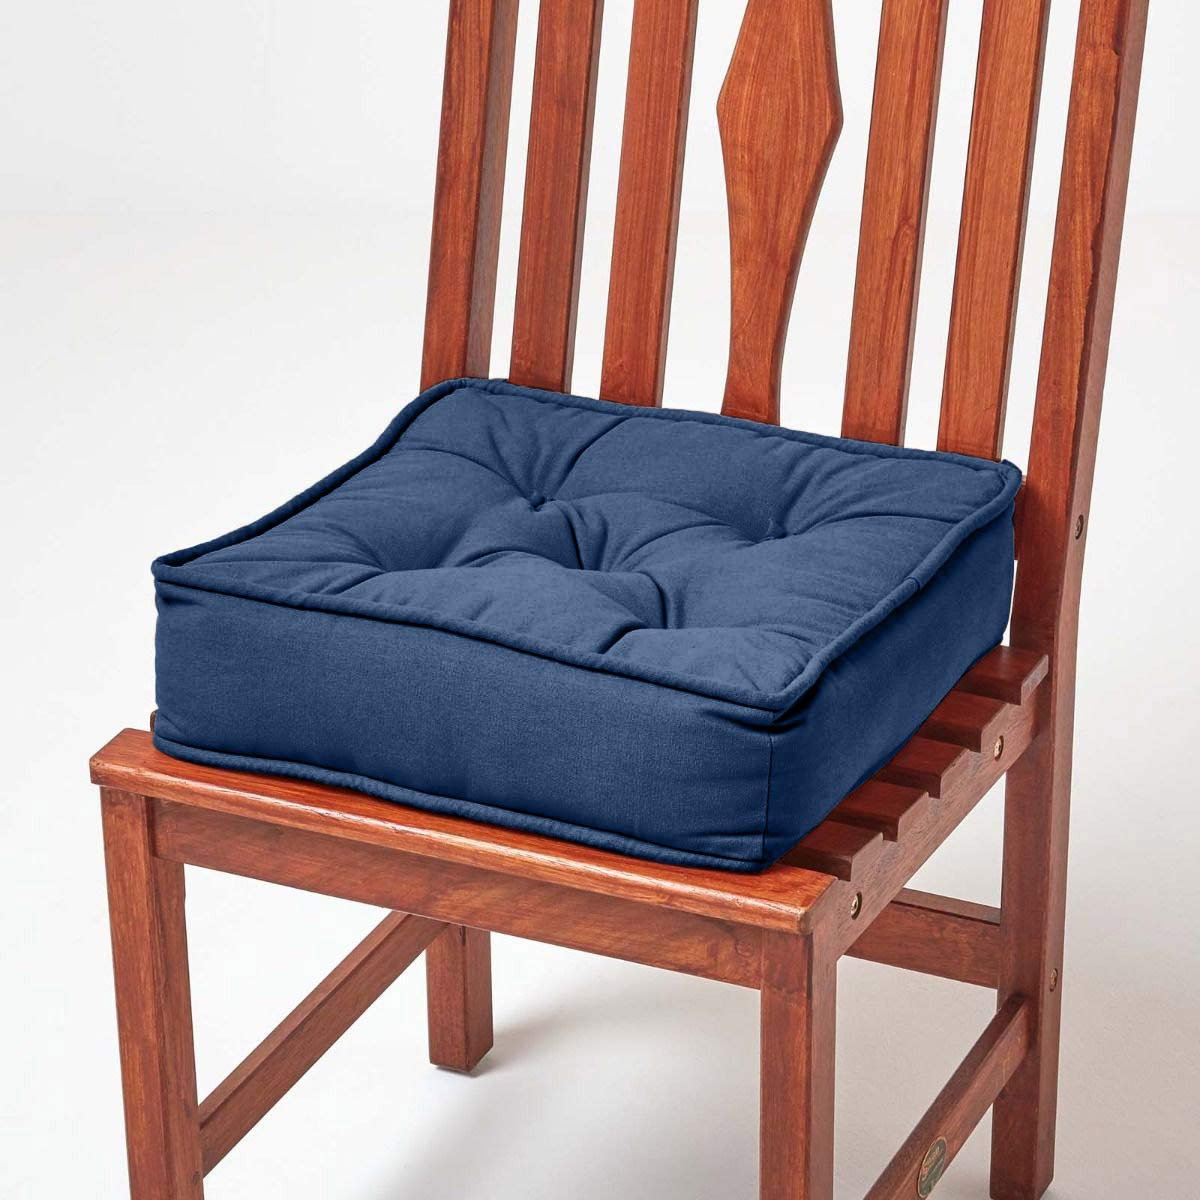 Homescapes Dickes Sitzkissen dunkelblau, Stuhlkissen 40x40 cm mit Bändern, Sitzerhöhung 10 cm, Matratzenkissen mit Baumwollbezug